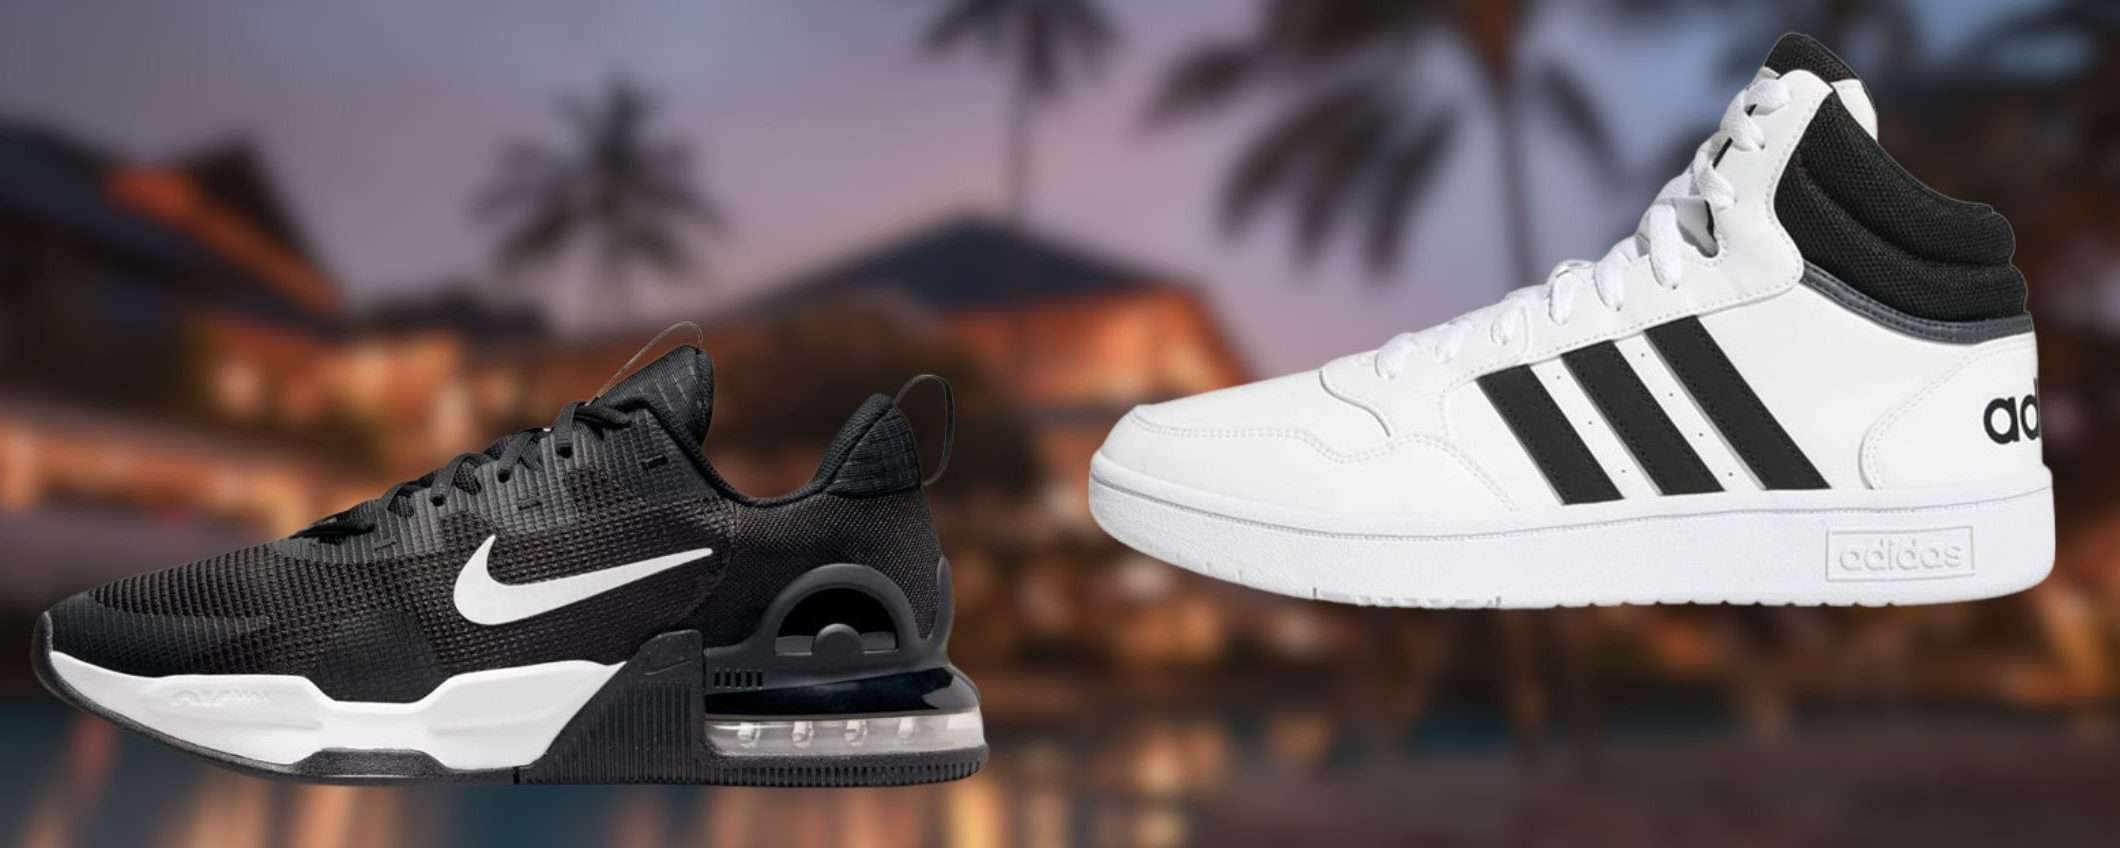 Sneaker Adidas e Nike da 37€ su Amazon: svendita INCONTROLLATA (fino a -63%)